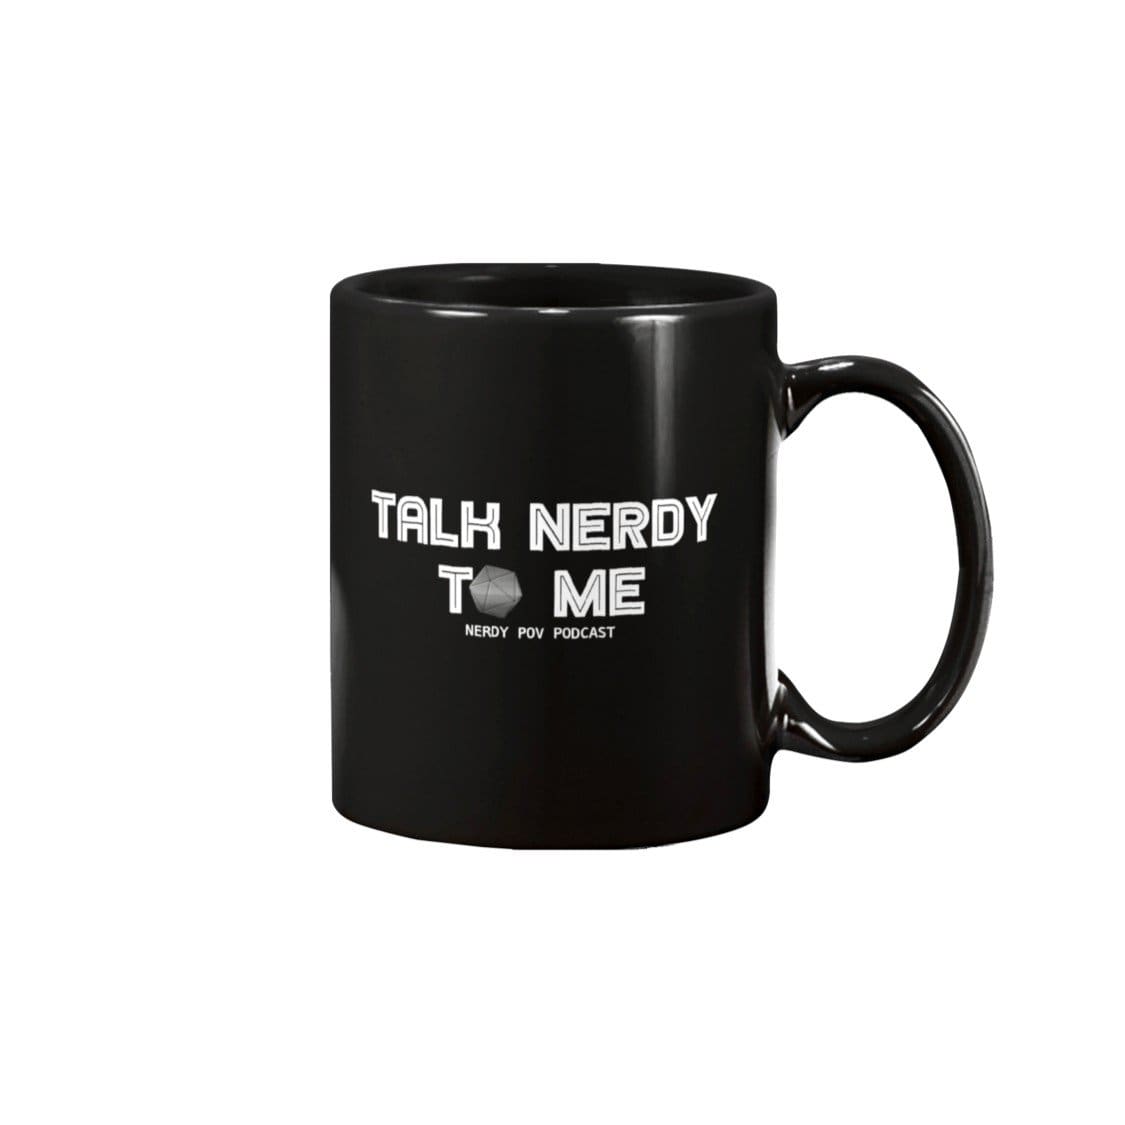 Nerdy Point of View Talk Nerdy 15oz Coffee Mug - Black / 15OZ - Nerdy Point of View